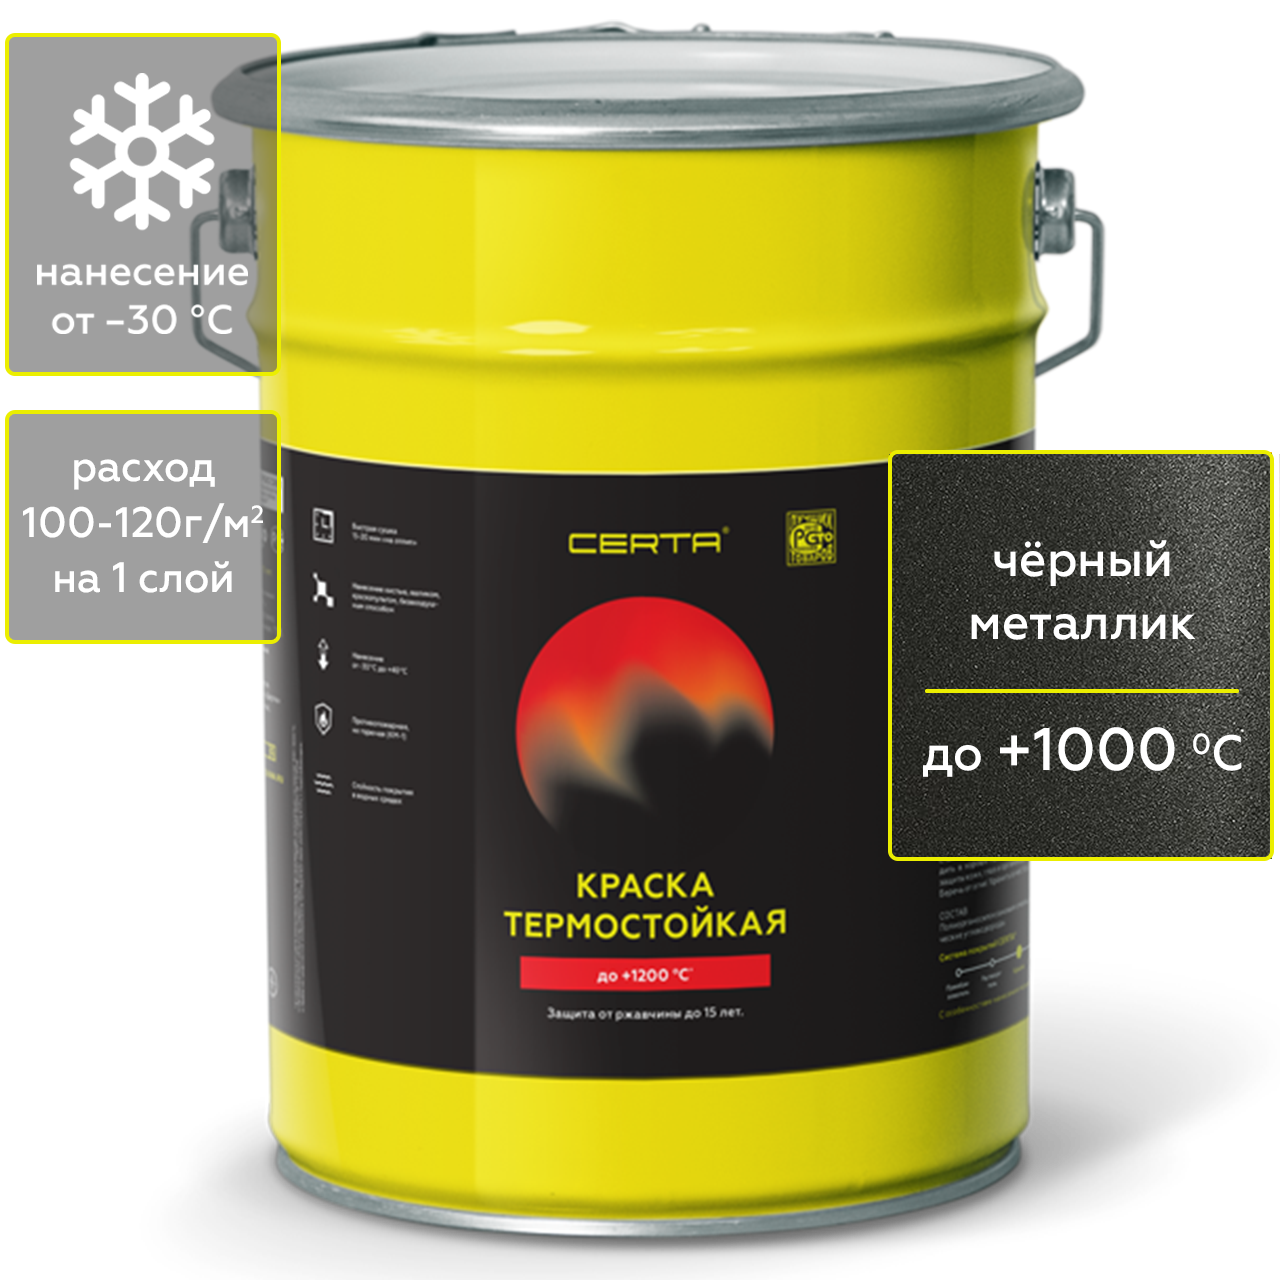 Краска Certa HS для печей, мангалов, радиаторов термостойкая до 1000°С чёрный металлик 4кг герметик для печей penosil